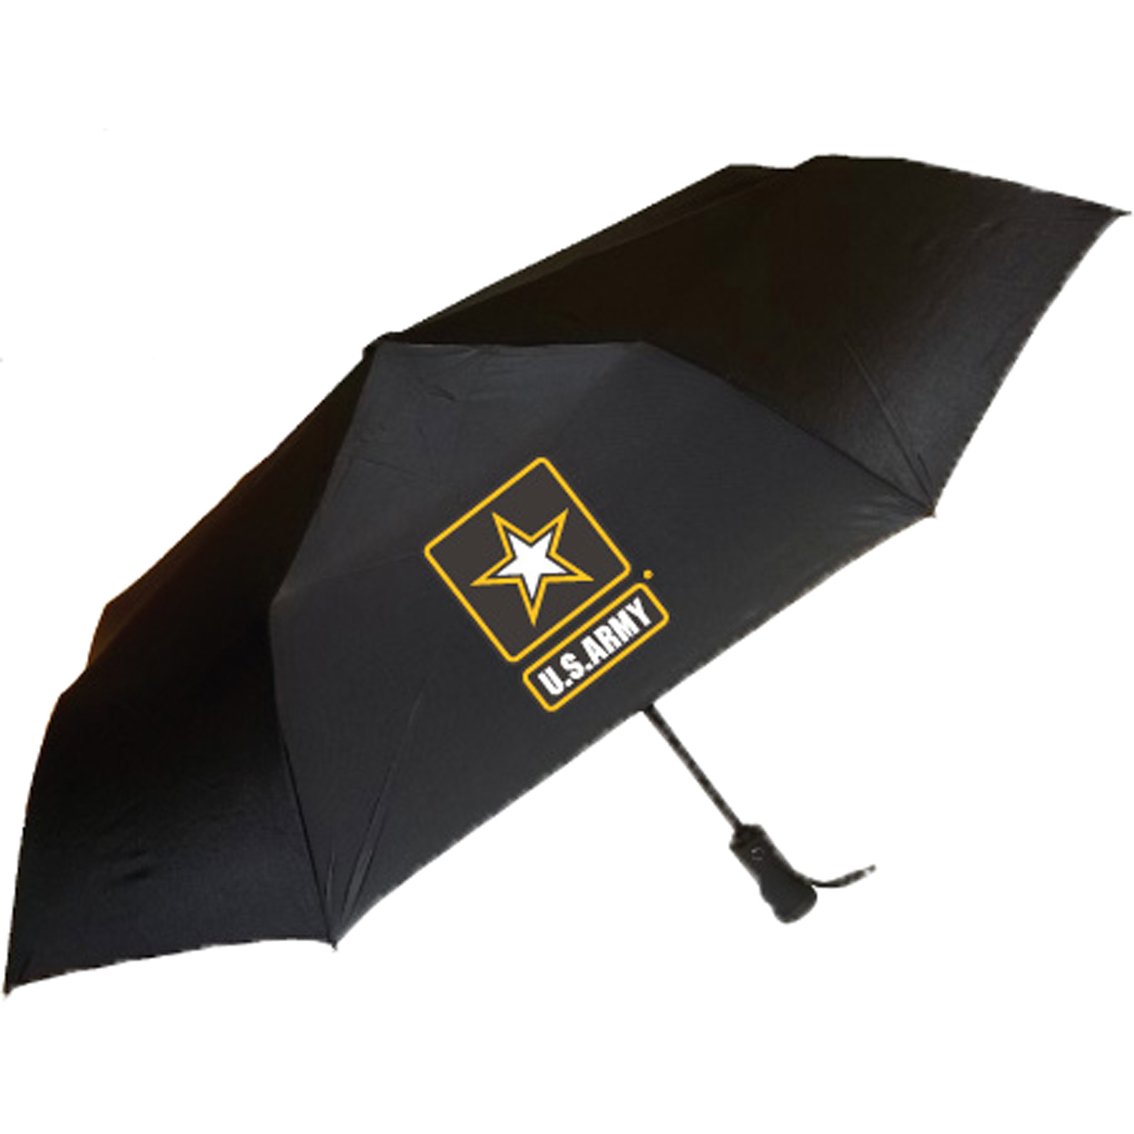 Storm Duds Storm Flash Umbrella